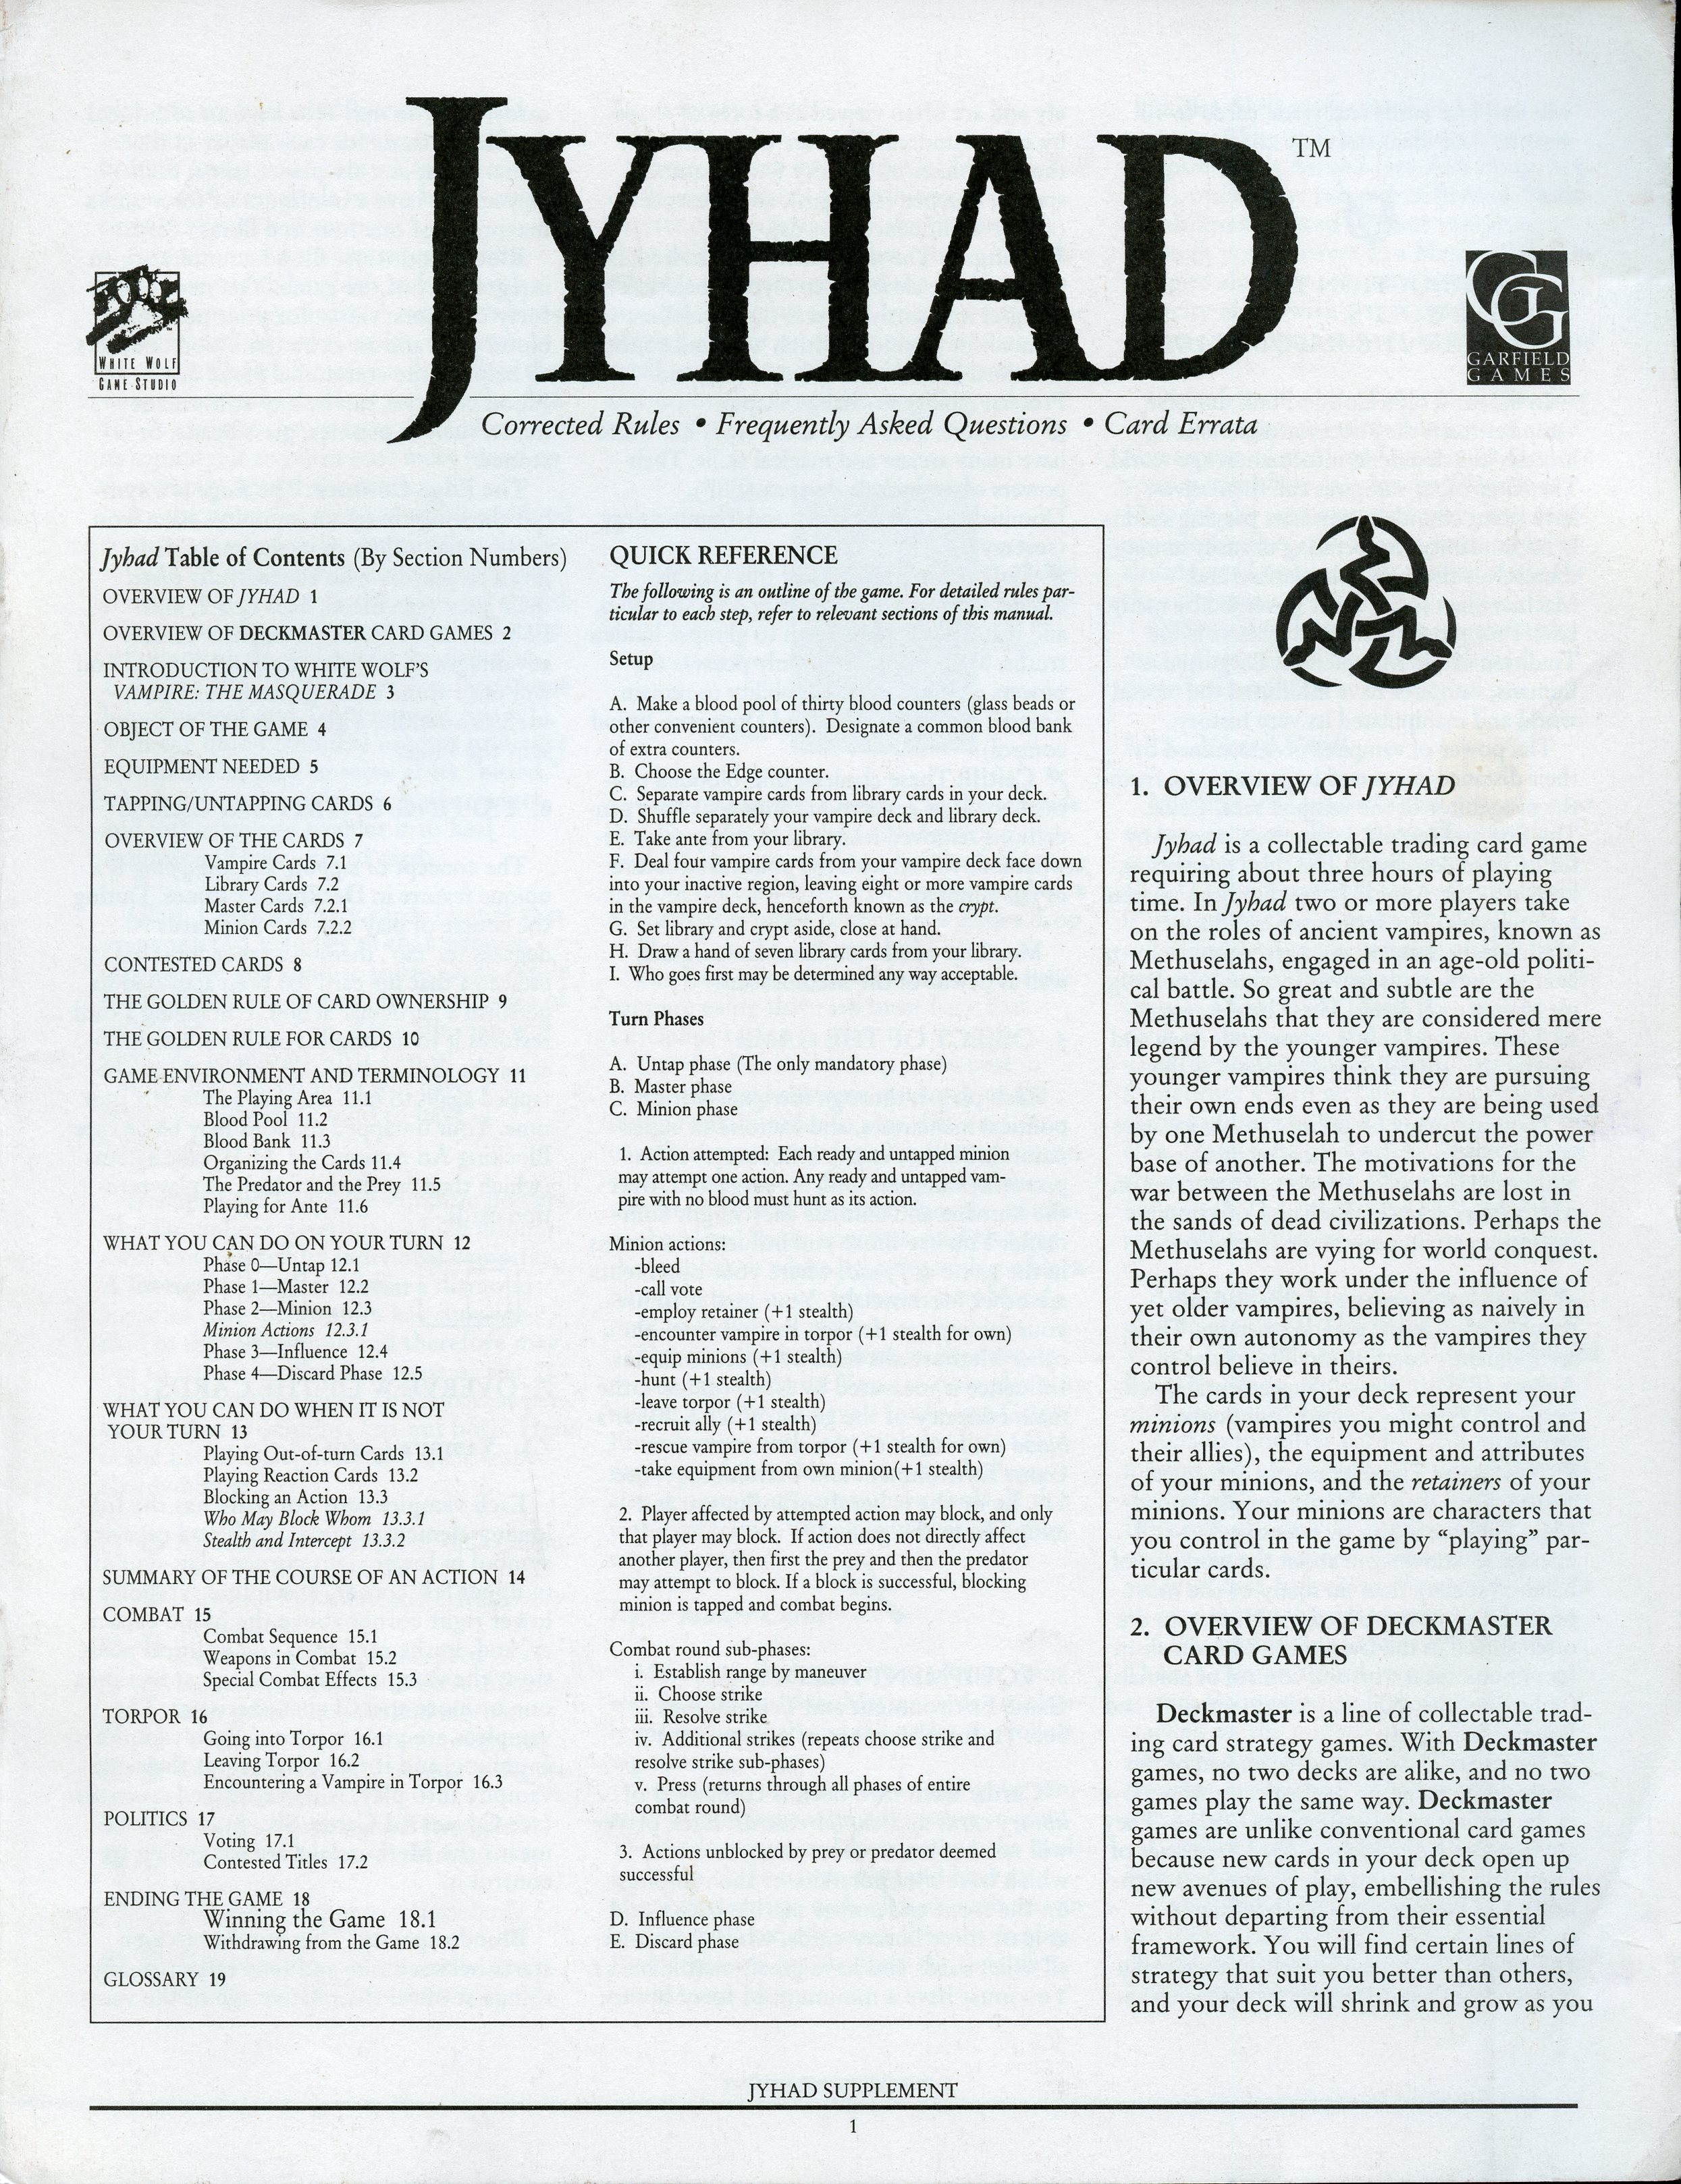 Jyhad Supplement